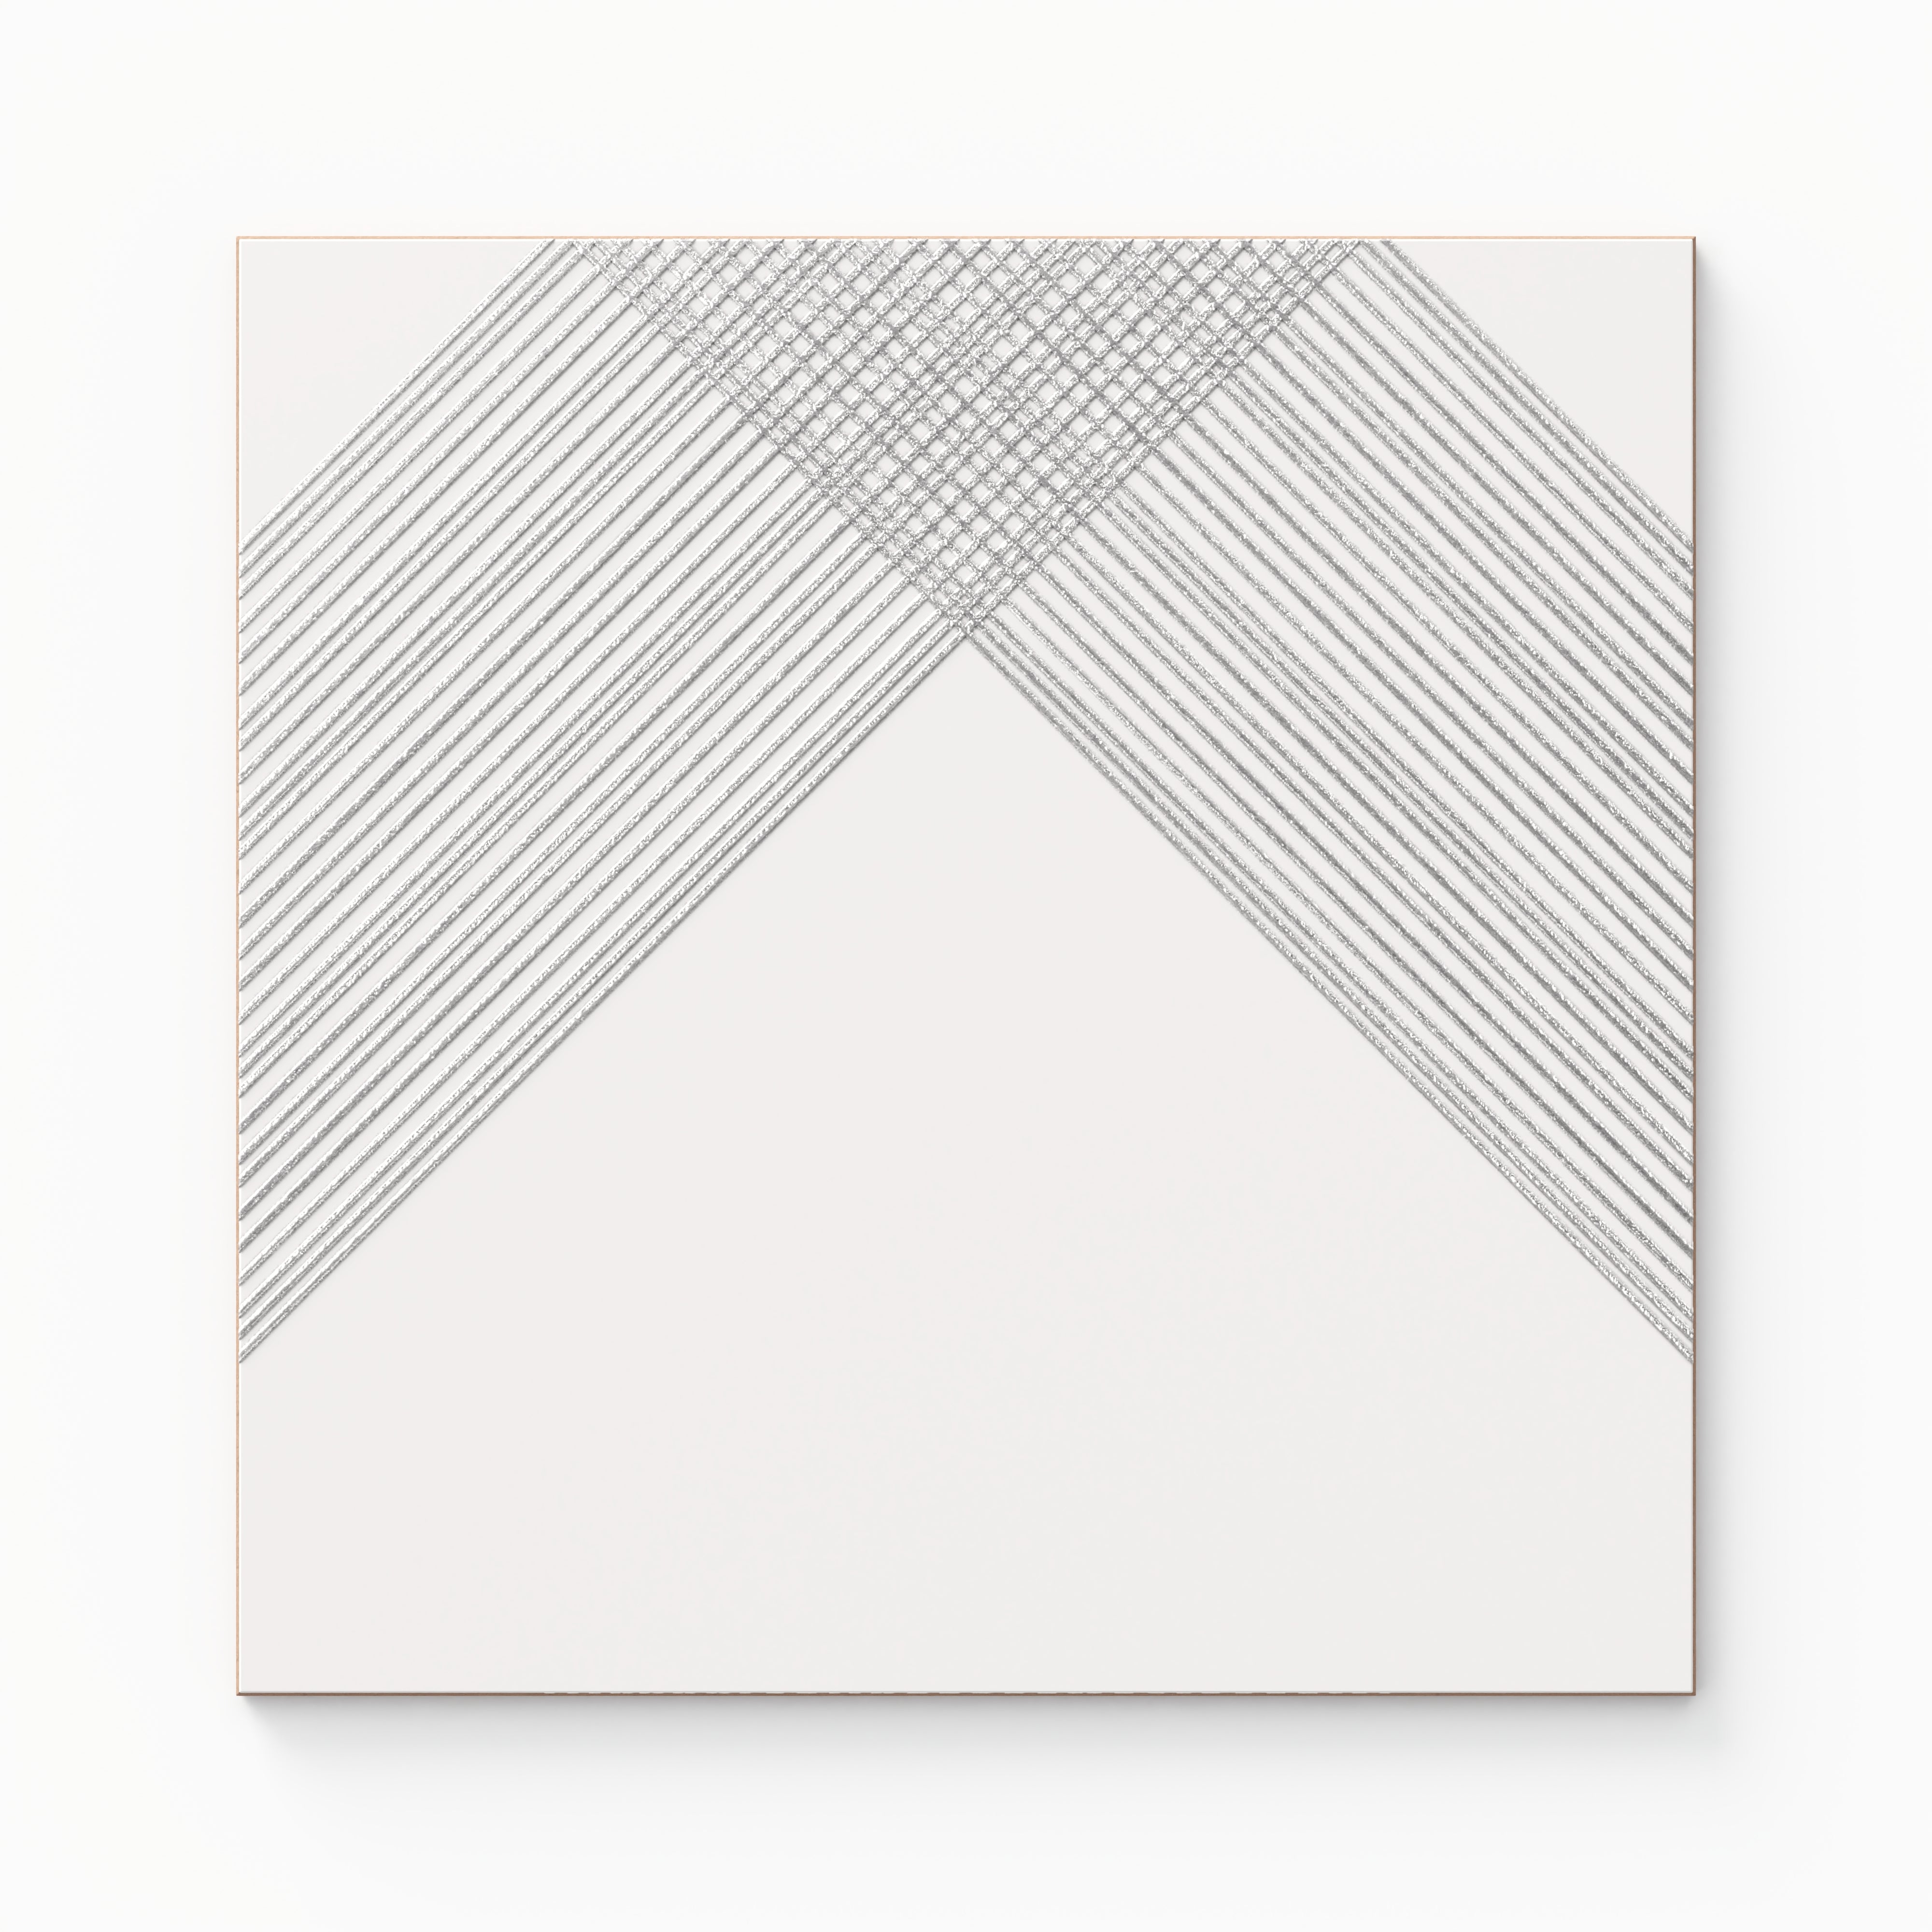 Estelle 12x12 Satin Ceramic Tile in Deco 2 White Silver Sample